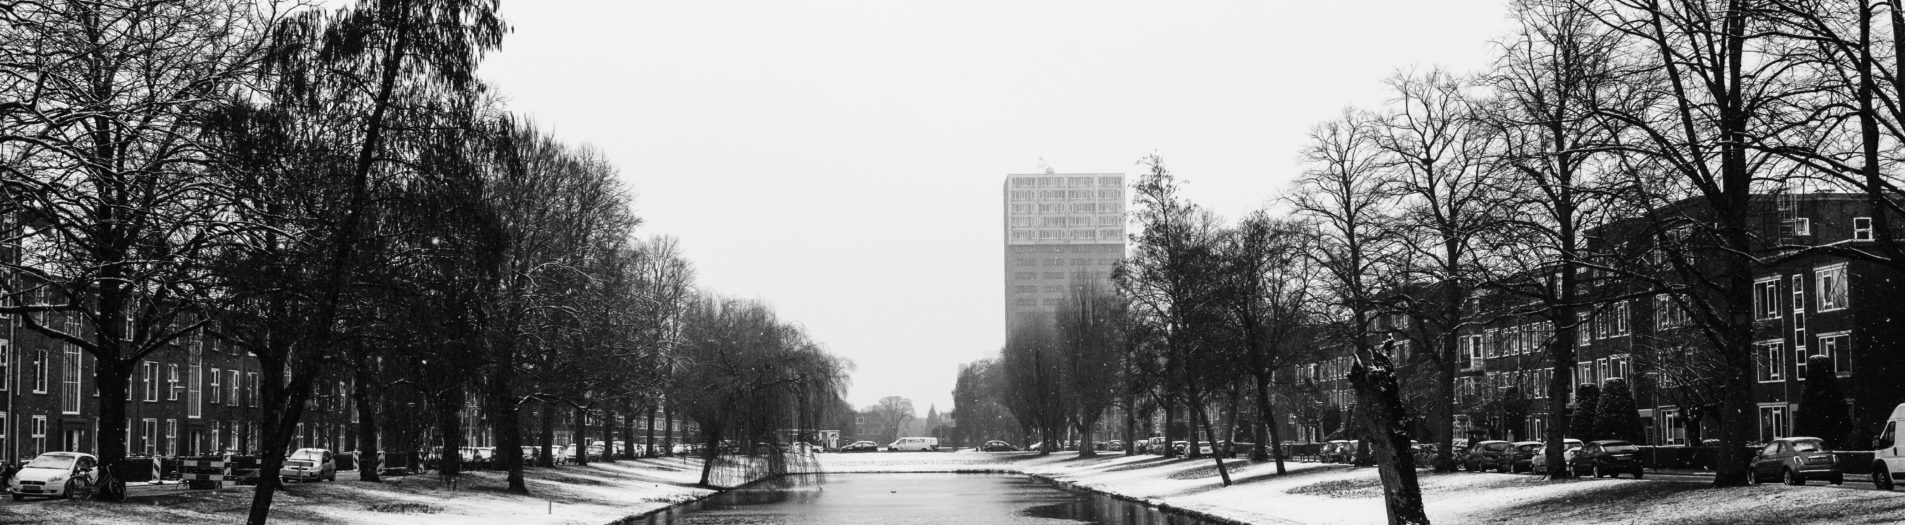 [Part[1&2] Serie SnowFall in [OosterparkwijkGroningen/GroningenCity] 10-03-2023 by [DillenvanderMolen @MrOfColorsPhotography #MrOfColorsPhotography]